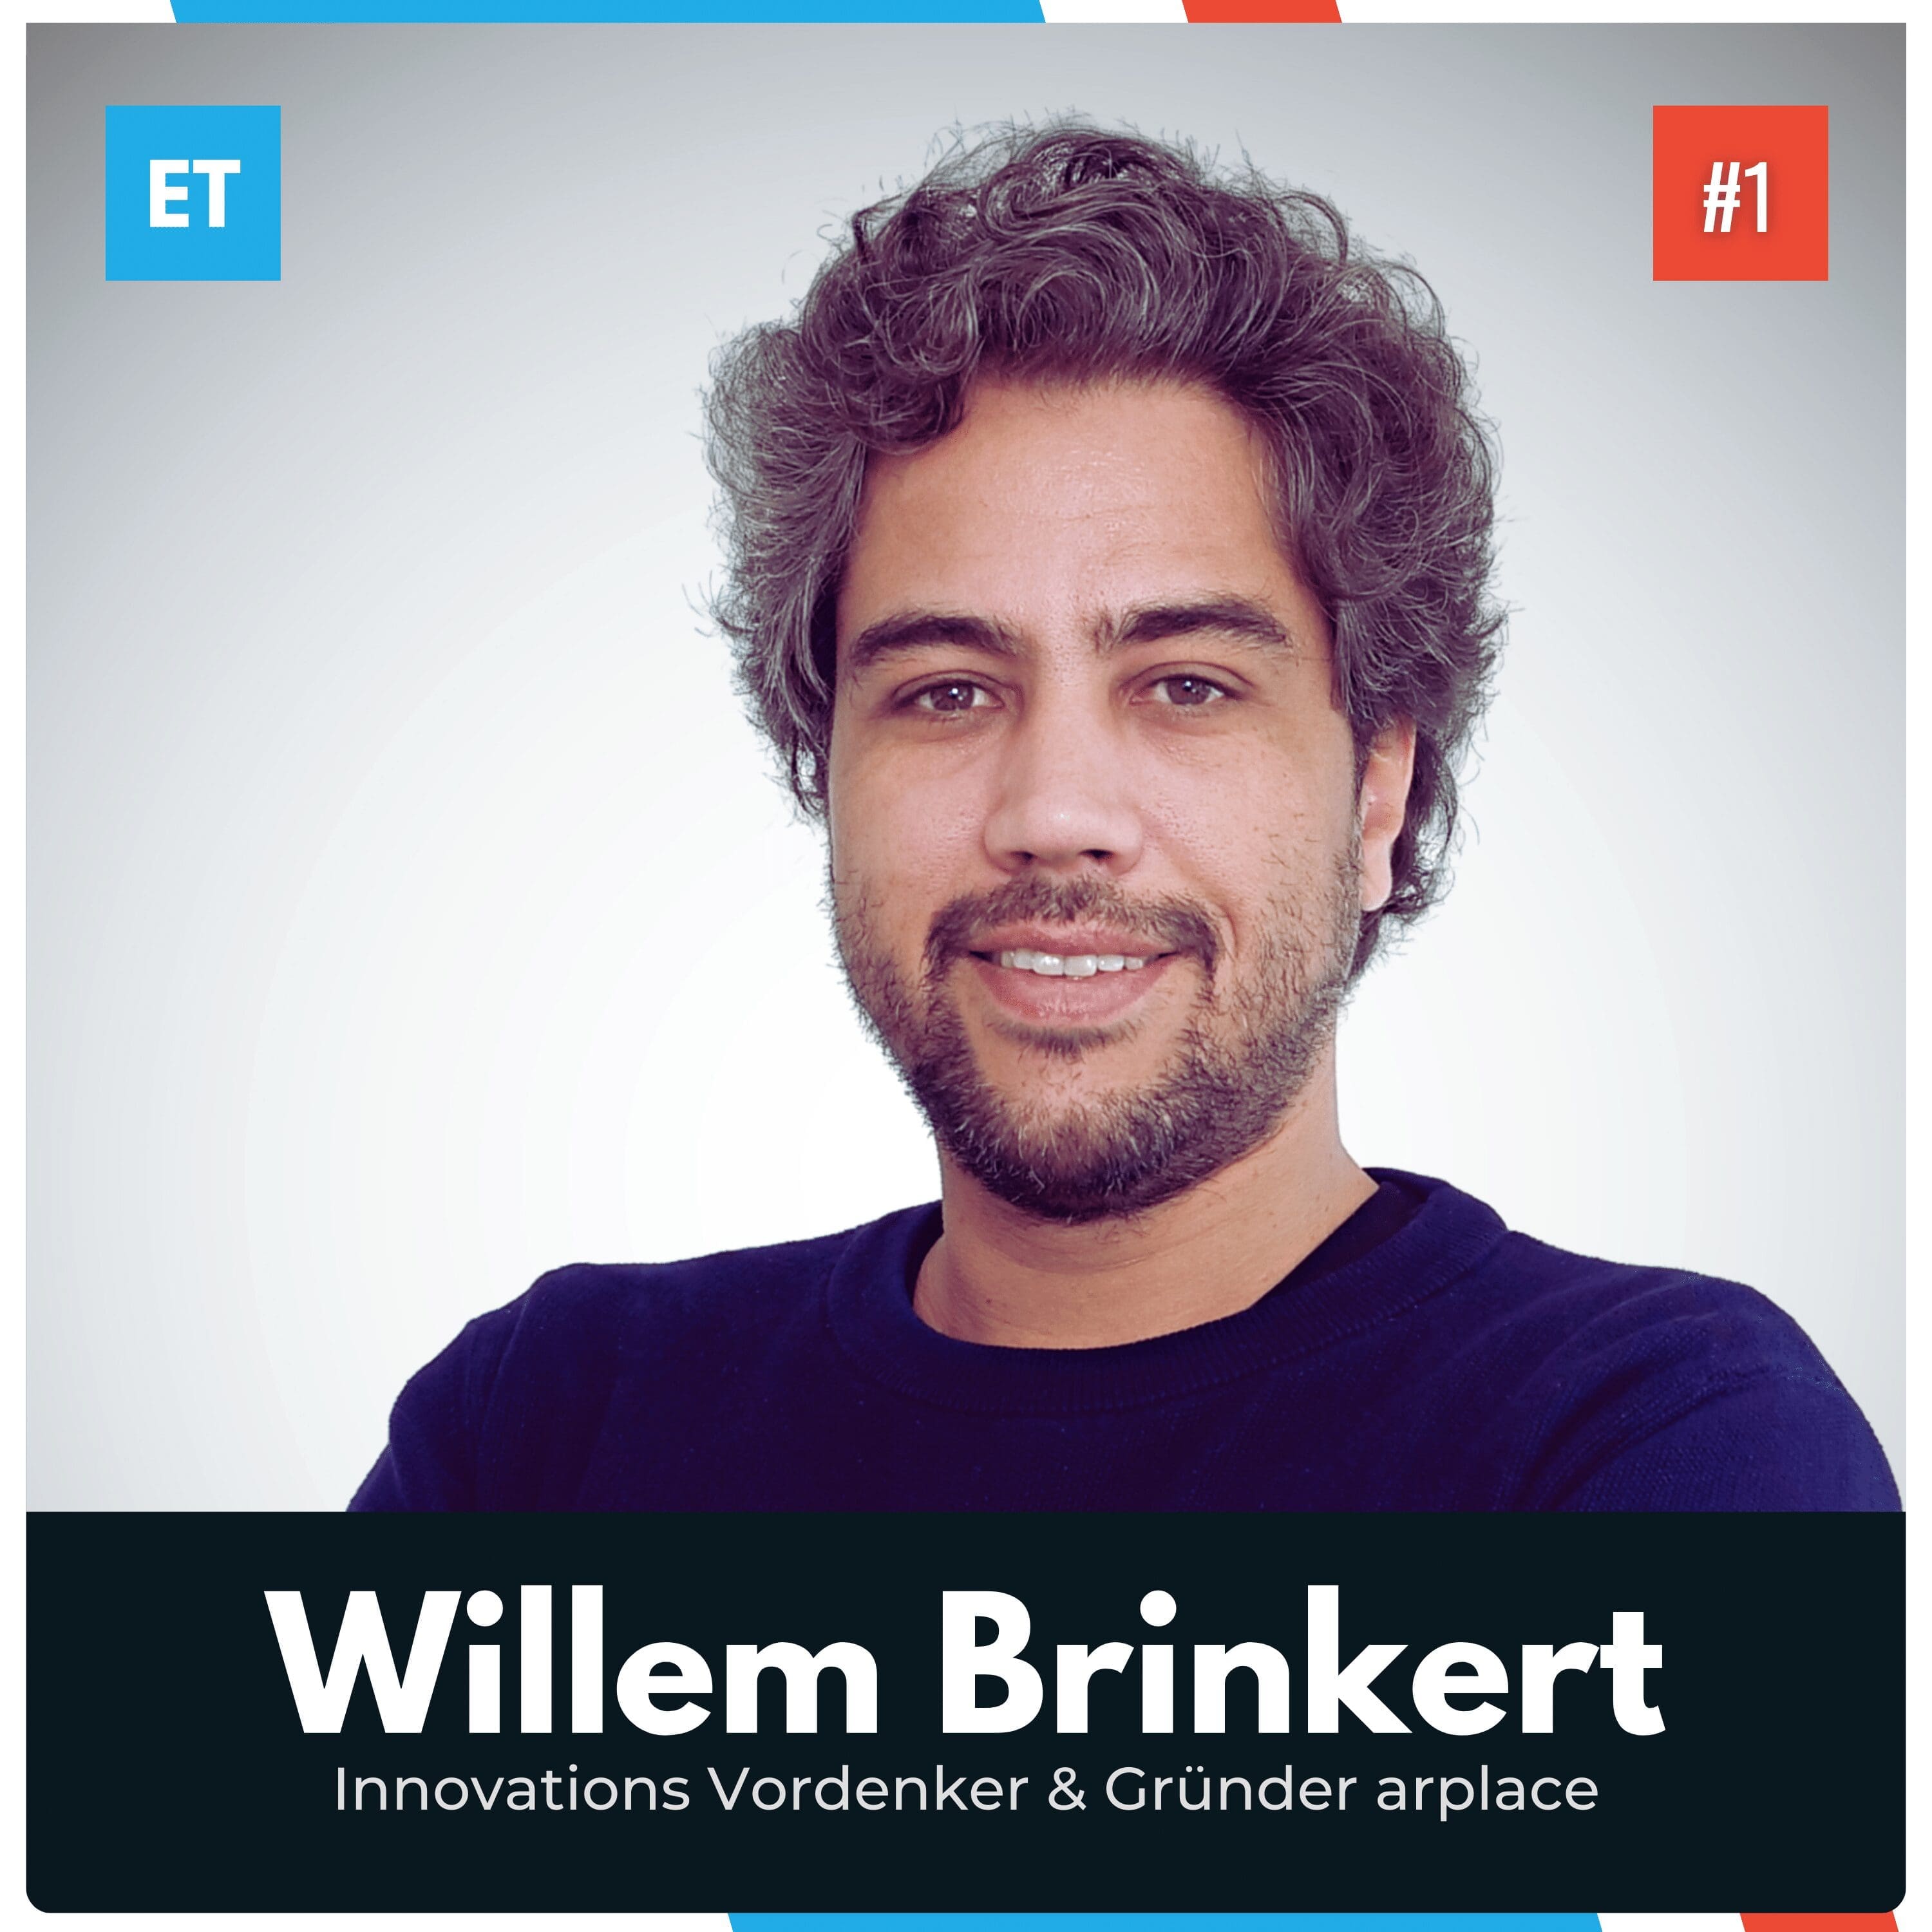 Willem Brinkert zu Gast im Exciting Tech Podcast